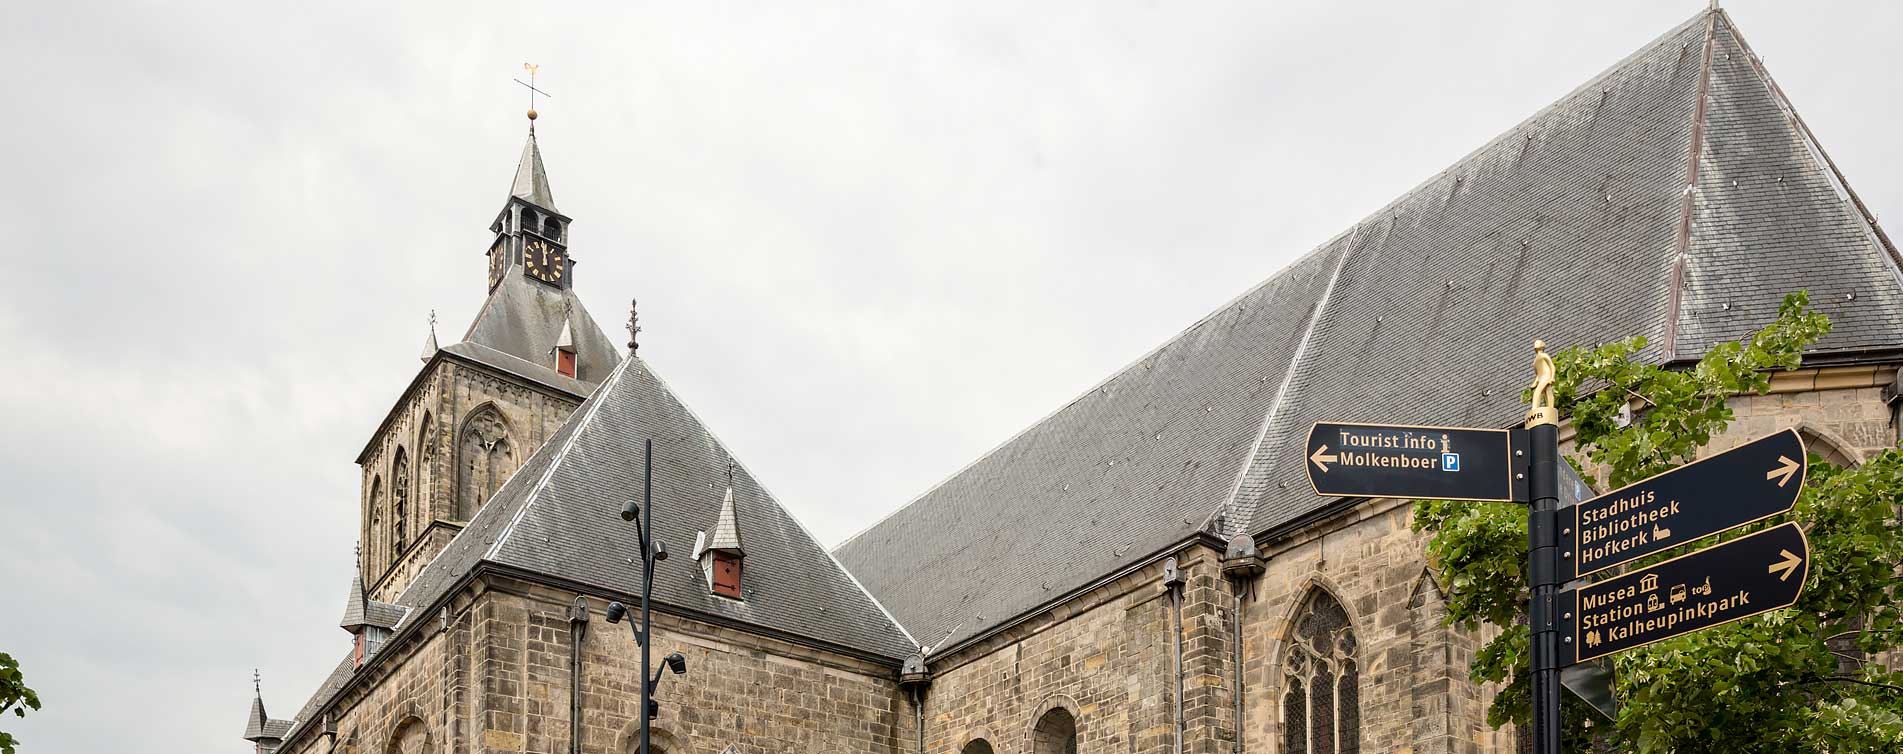 Wegwijzers voor de kerk van Oldenzaal - Regioadviescentrum